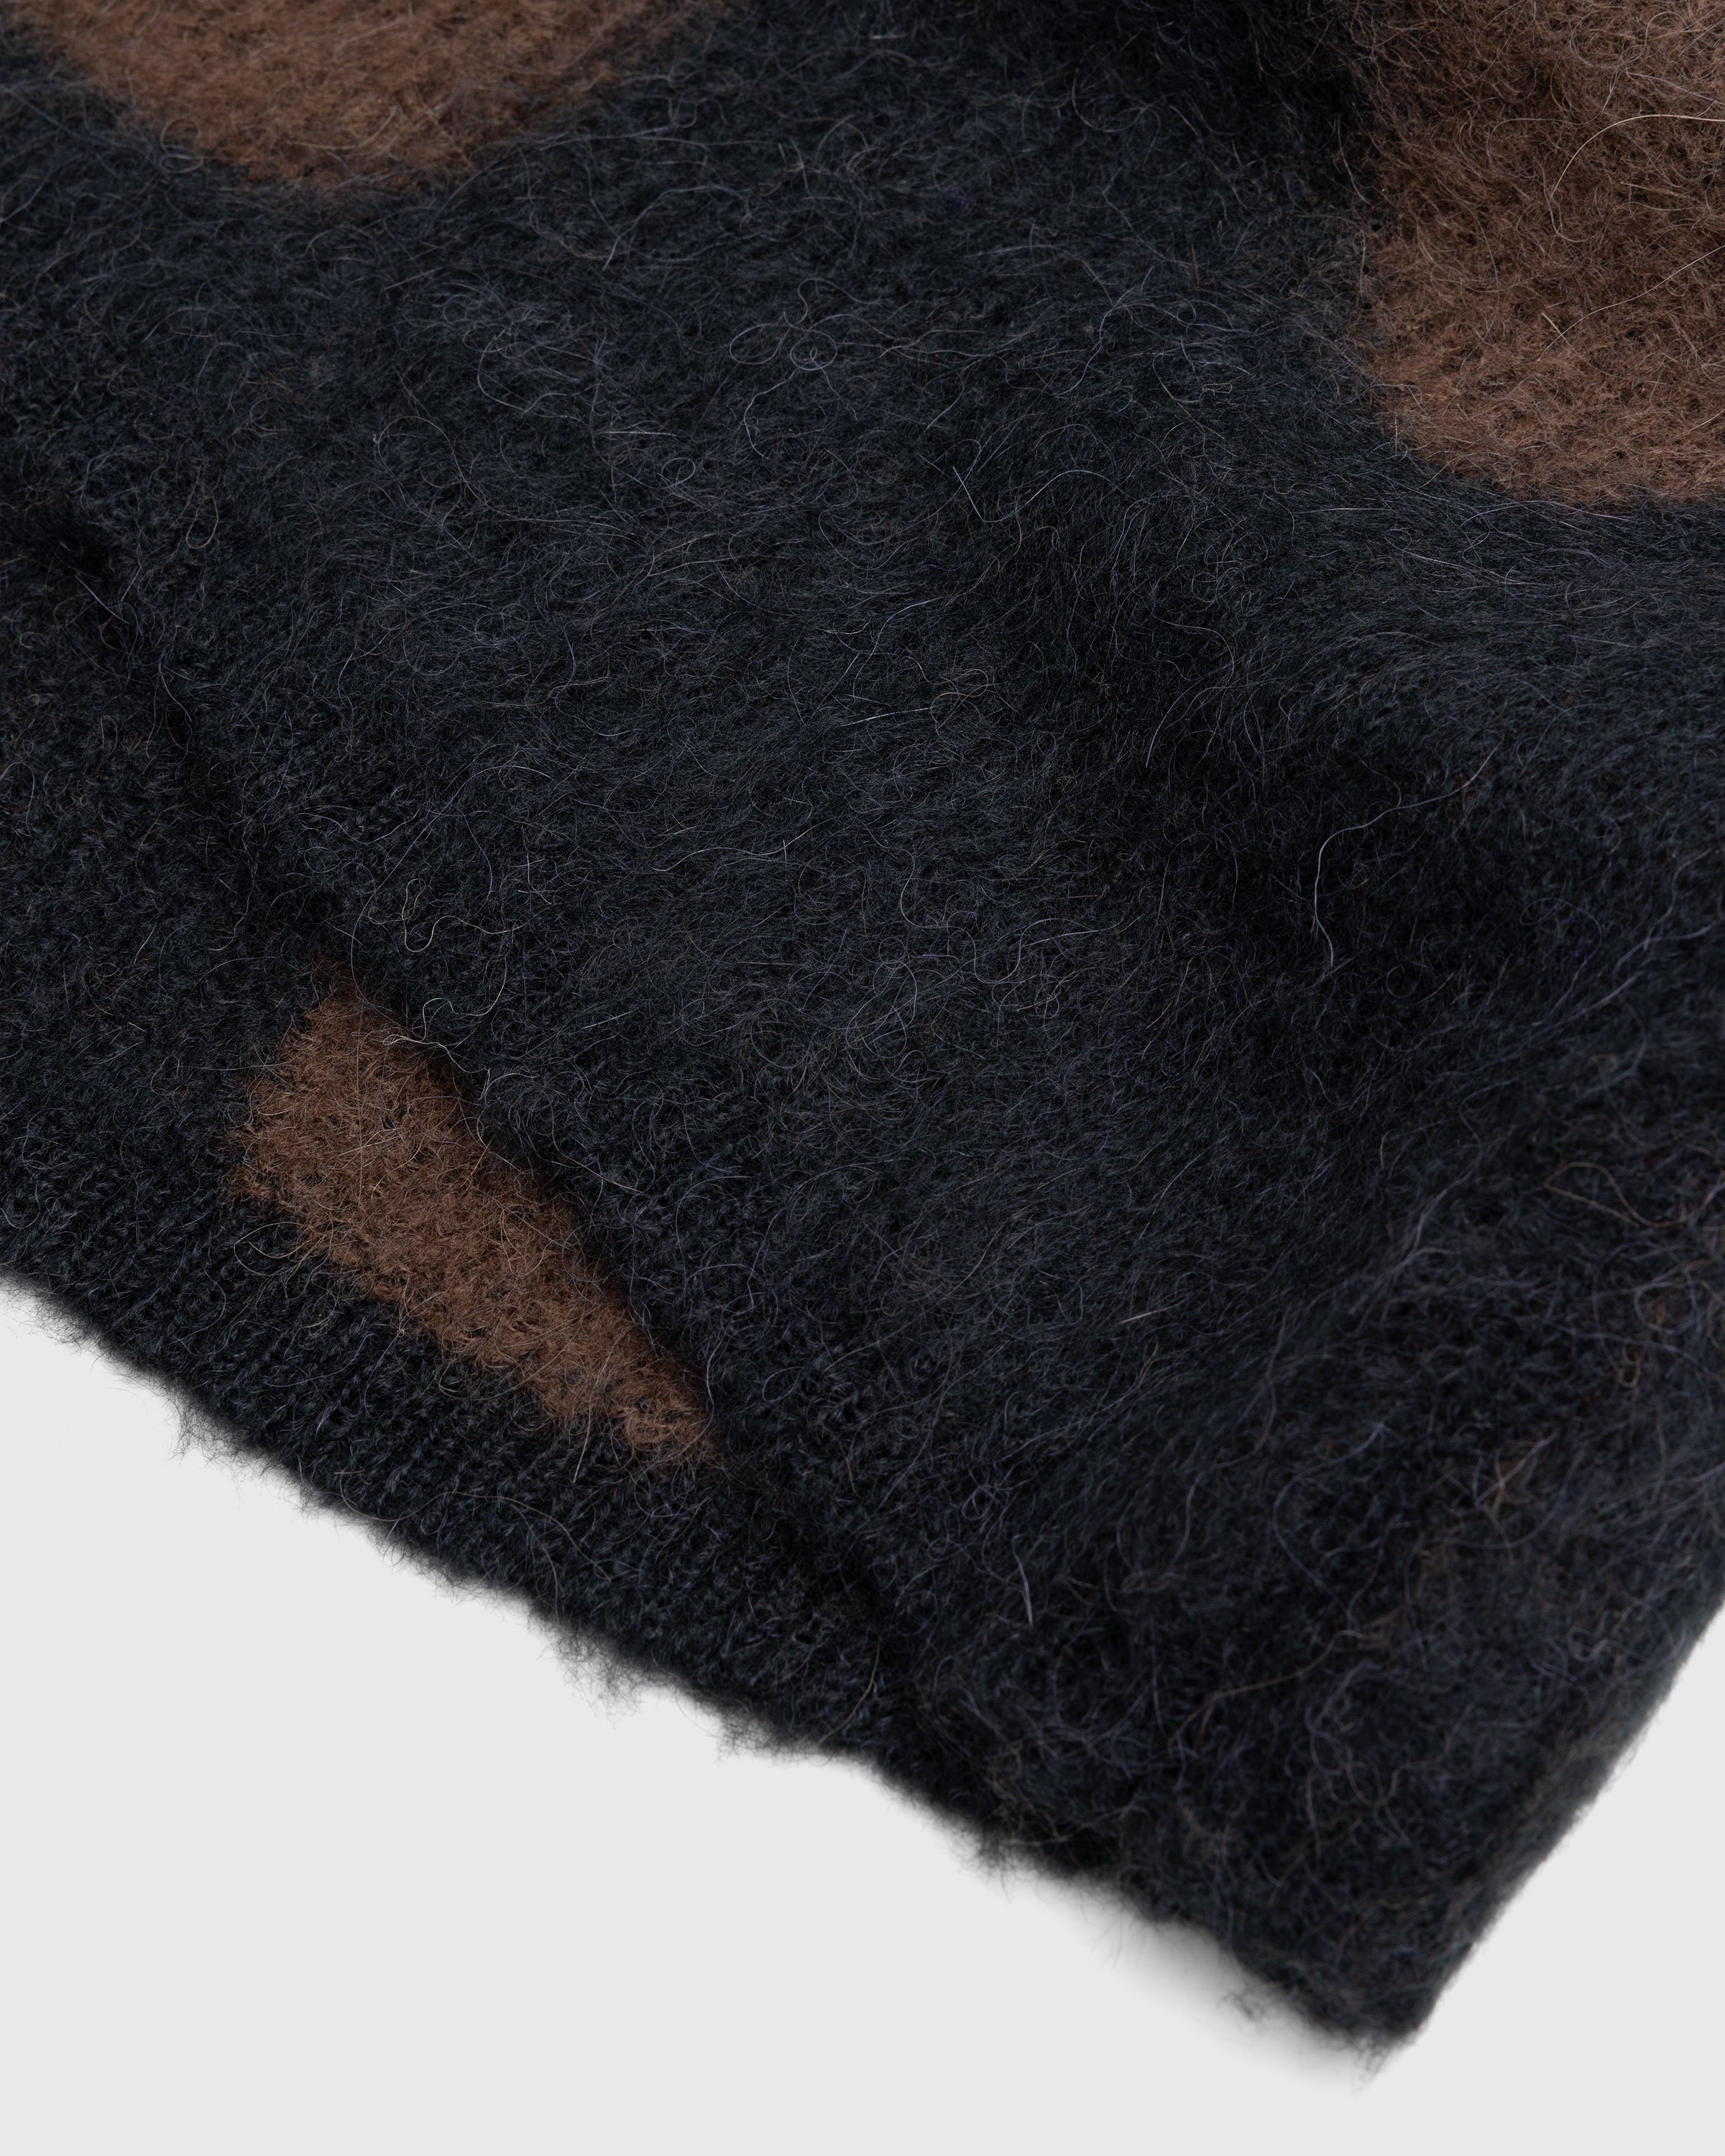 _J.L-A.L_ – Liquid Alpaca Sweater Black - Knitwear - Black - Image 6